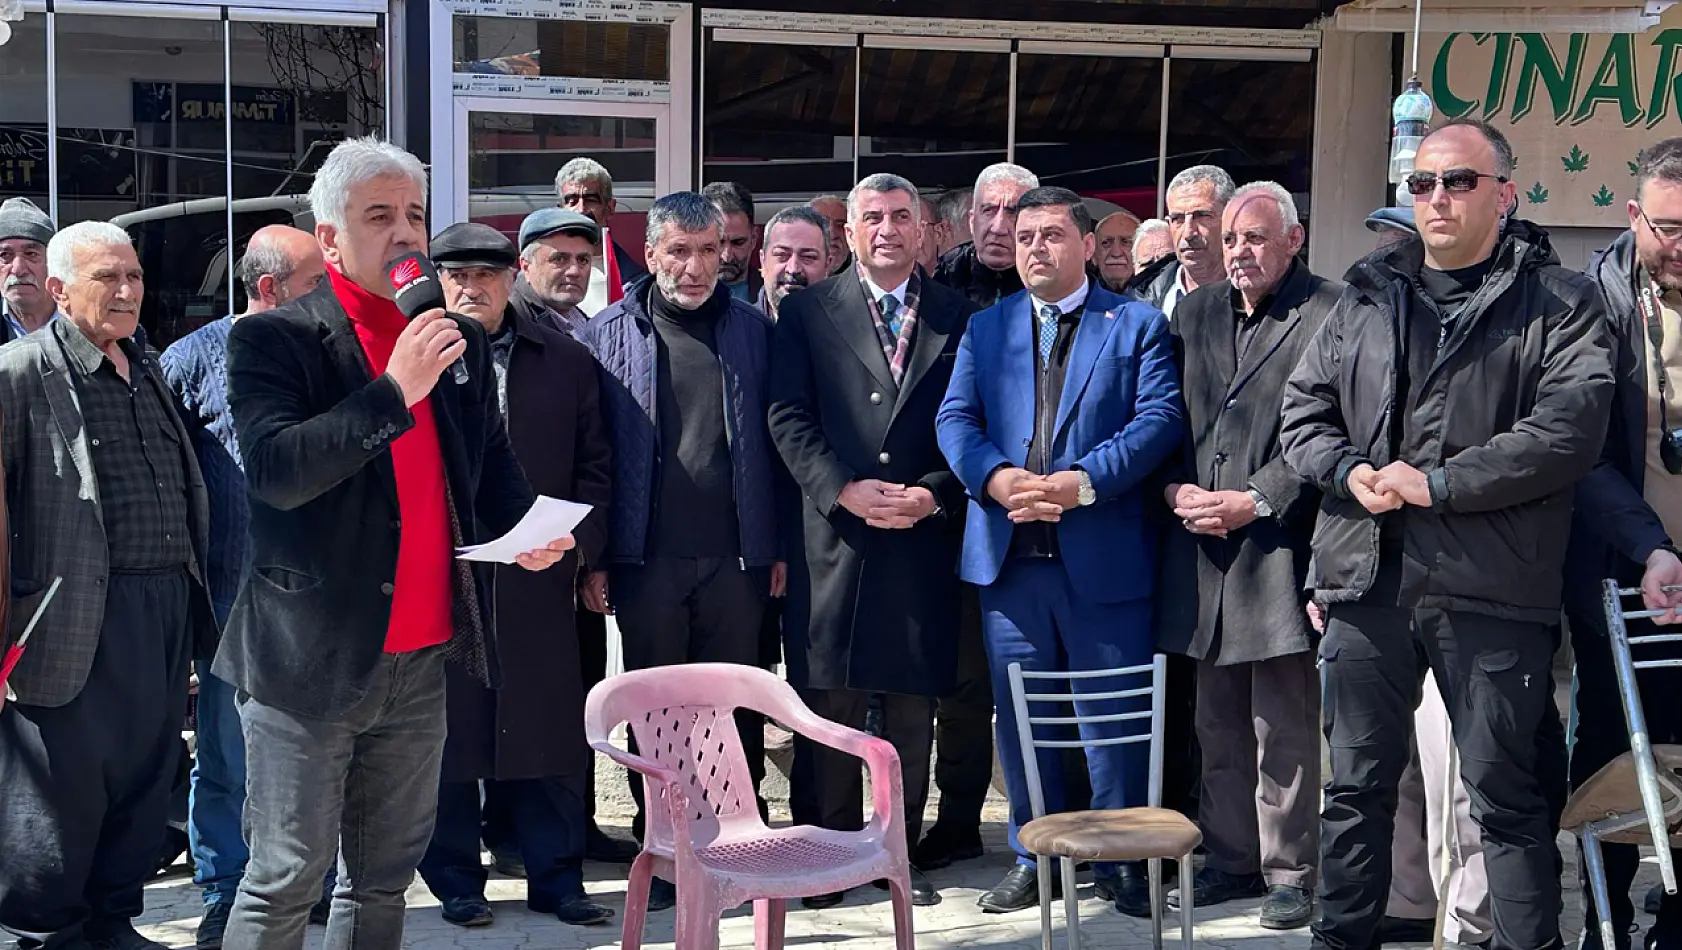 CHP Baskil Belediye Başkan Adayı Veli Baygeldi Milletvekili Gürsel Erol  Baskil İlçesinde Vatandaşlarla Bir Araya Geldi